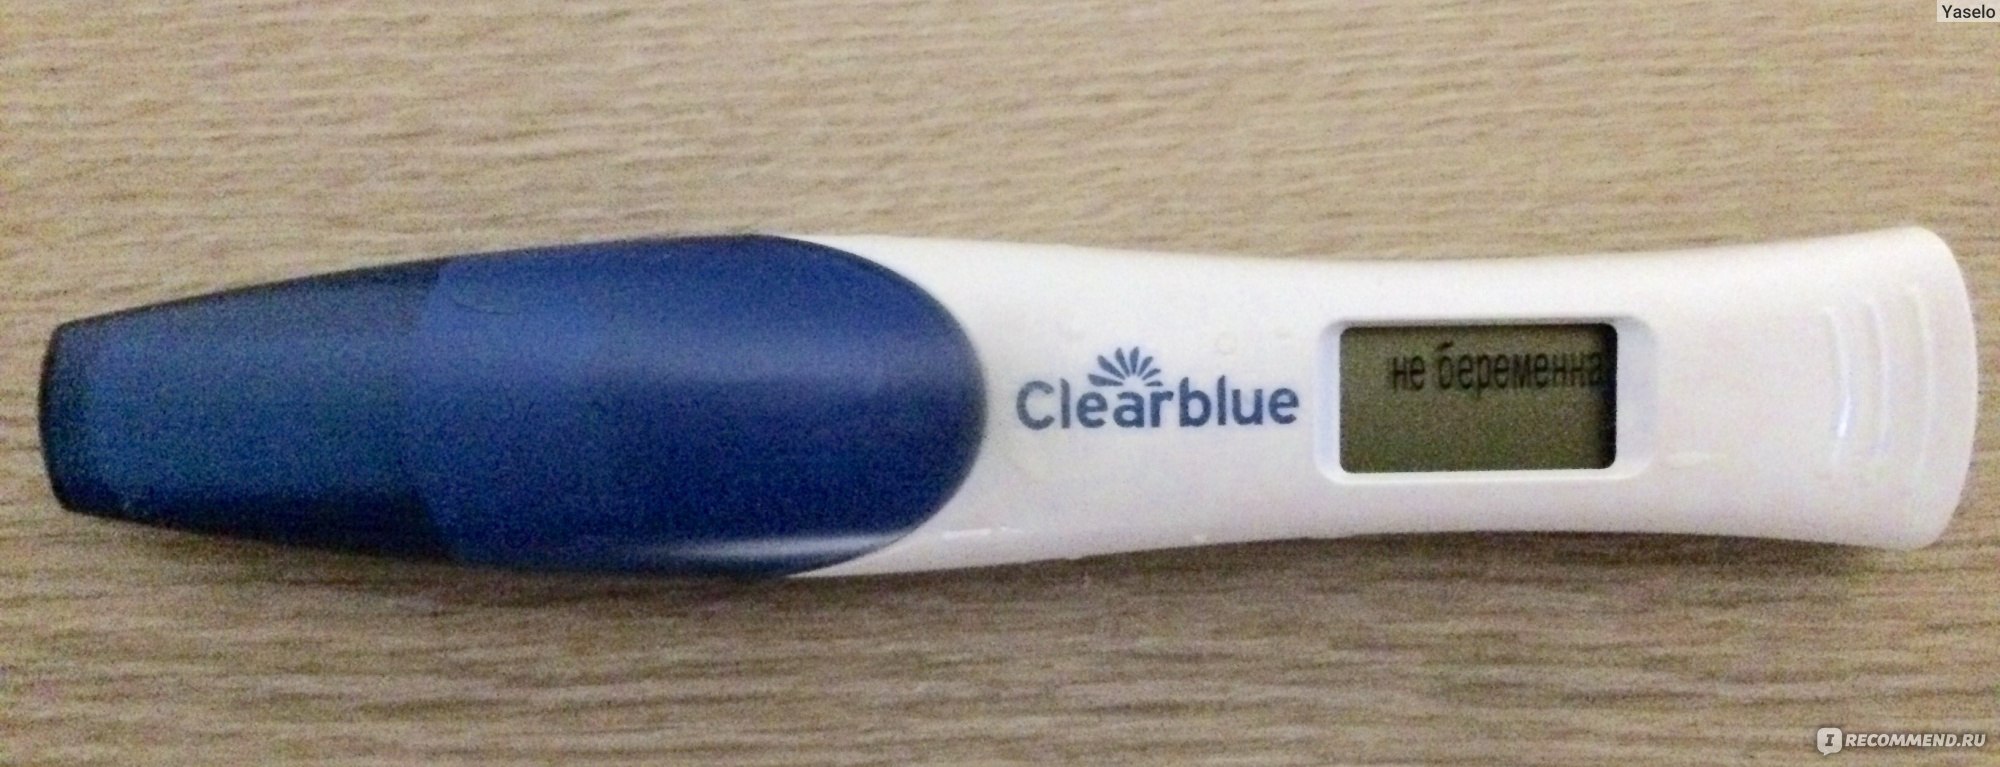 Отрицательный тест на беременность на сером фоне